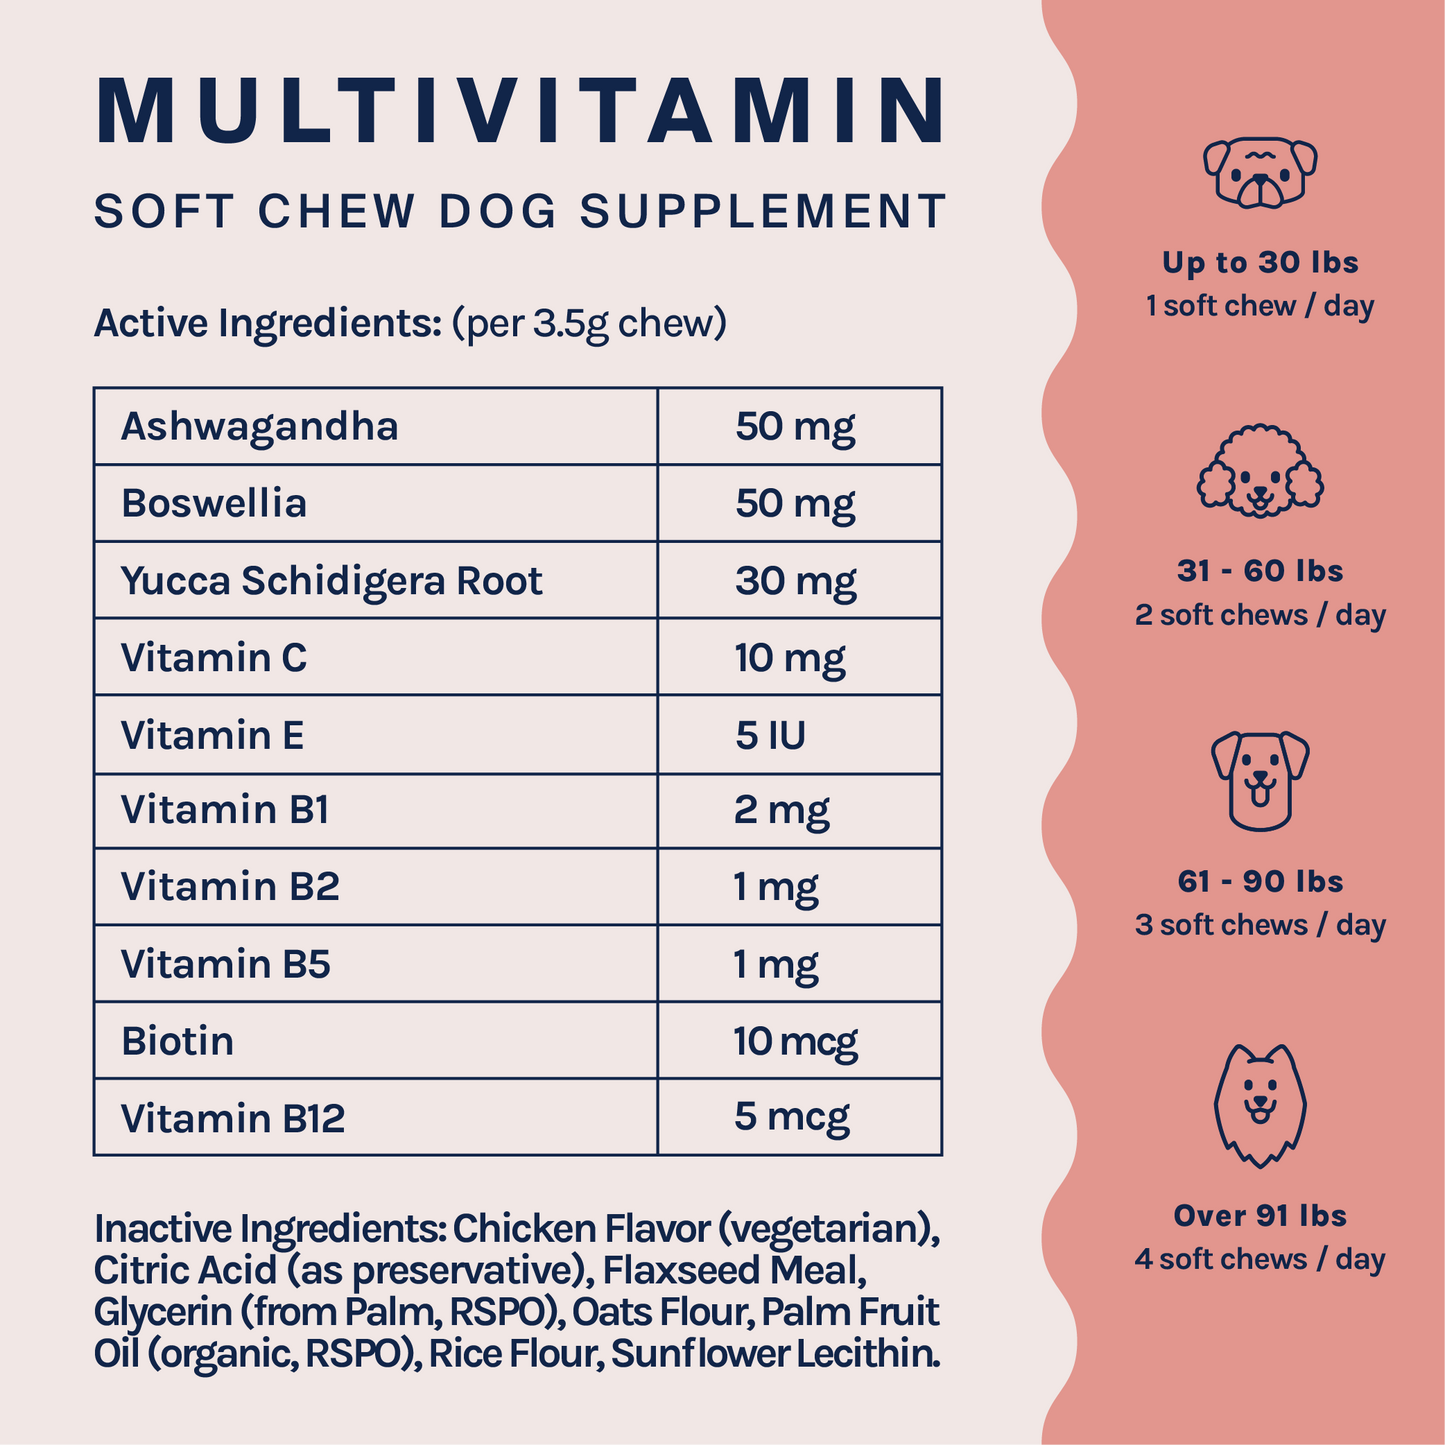 Dog Complete Care Multivitamin